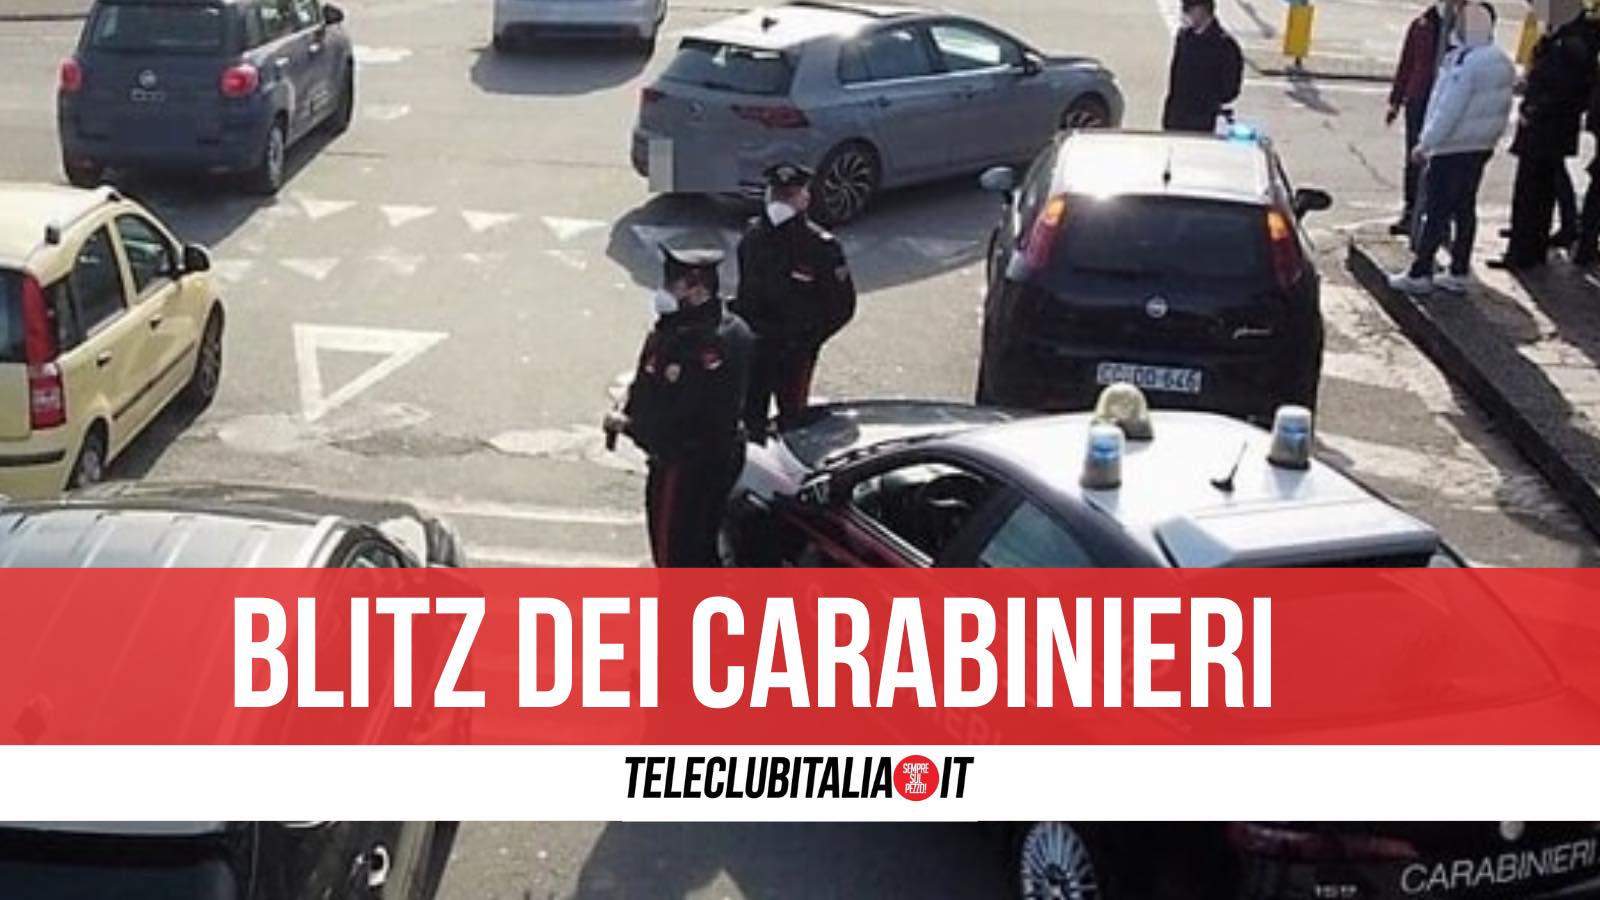 carabinieri 7 arresti droga giugliano aversa